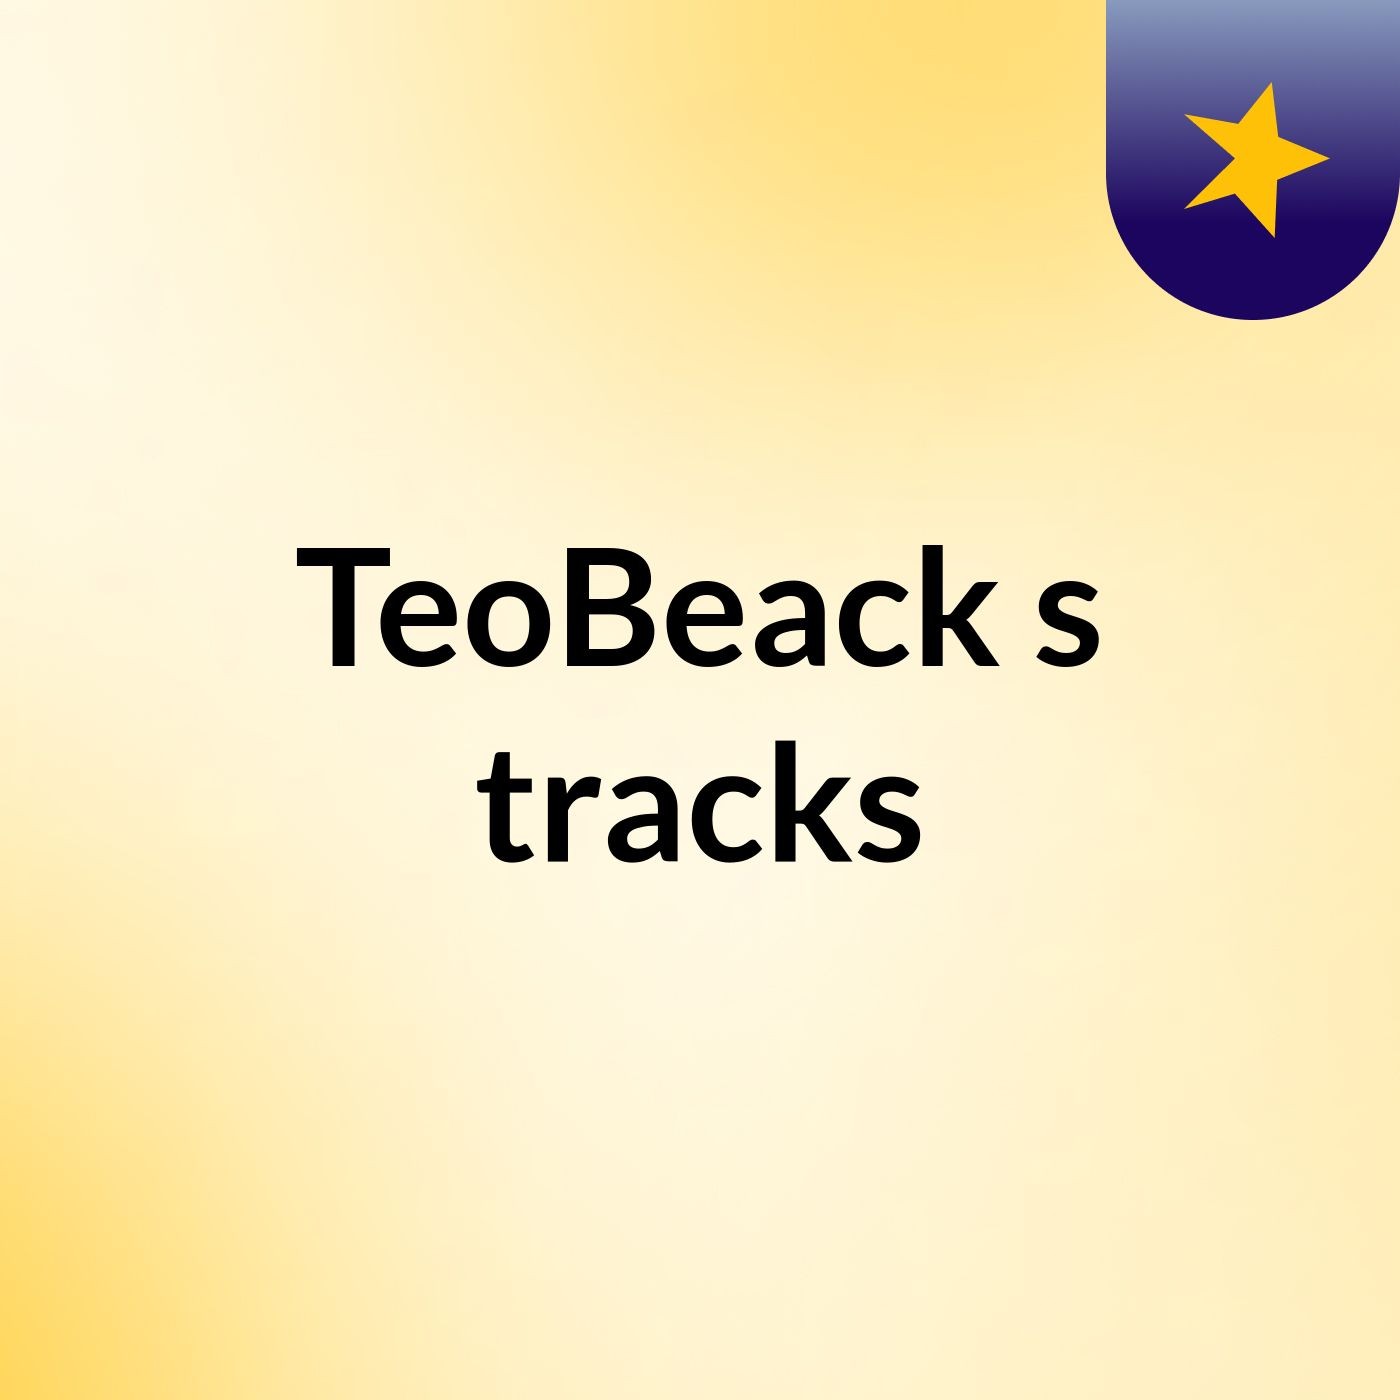 TeoBeack's tracks